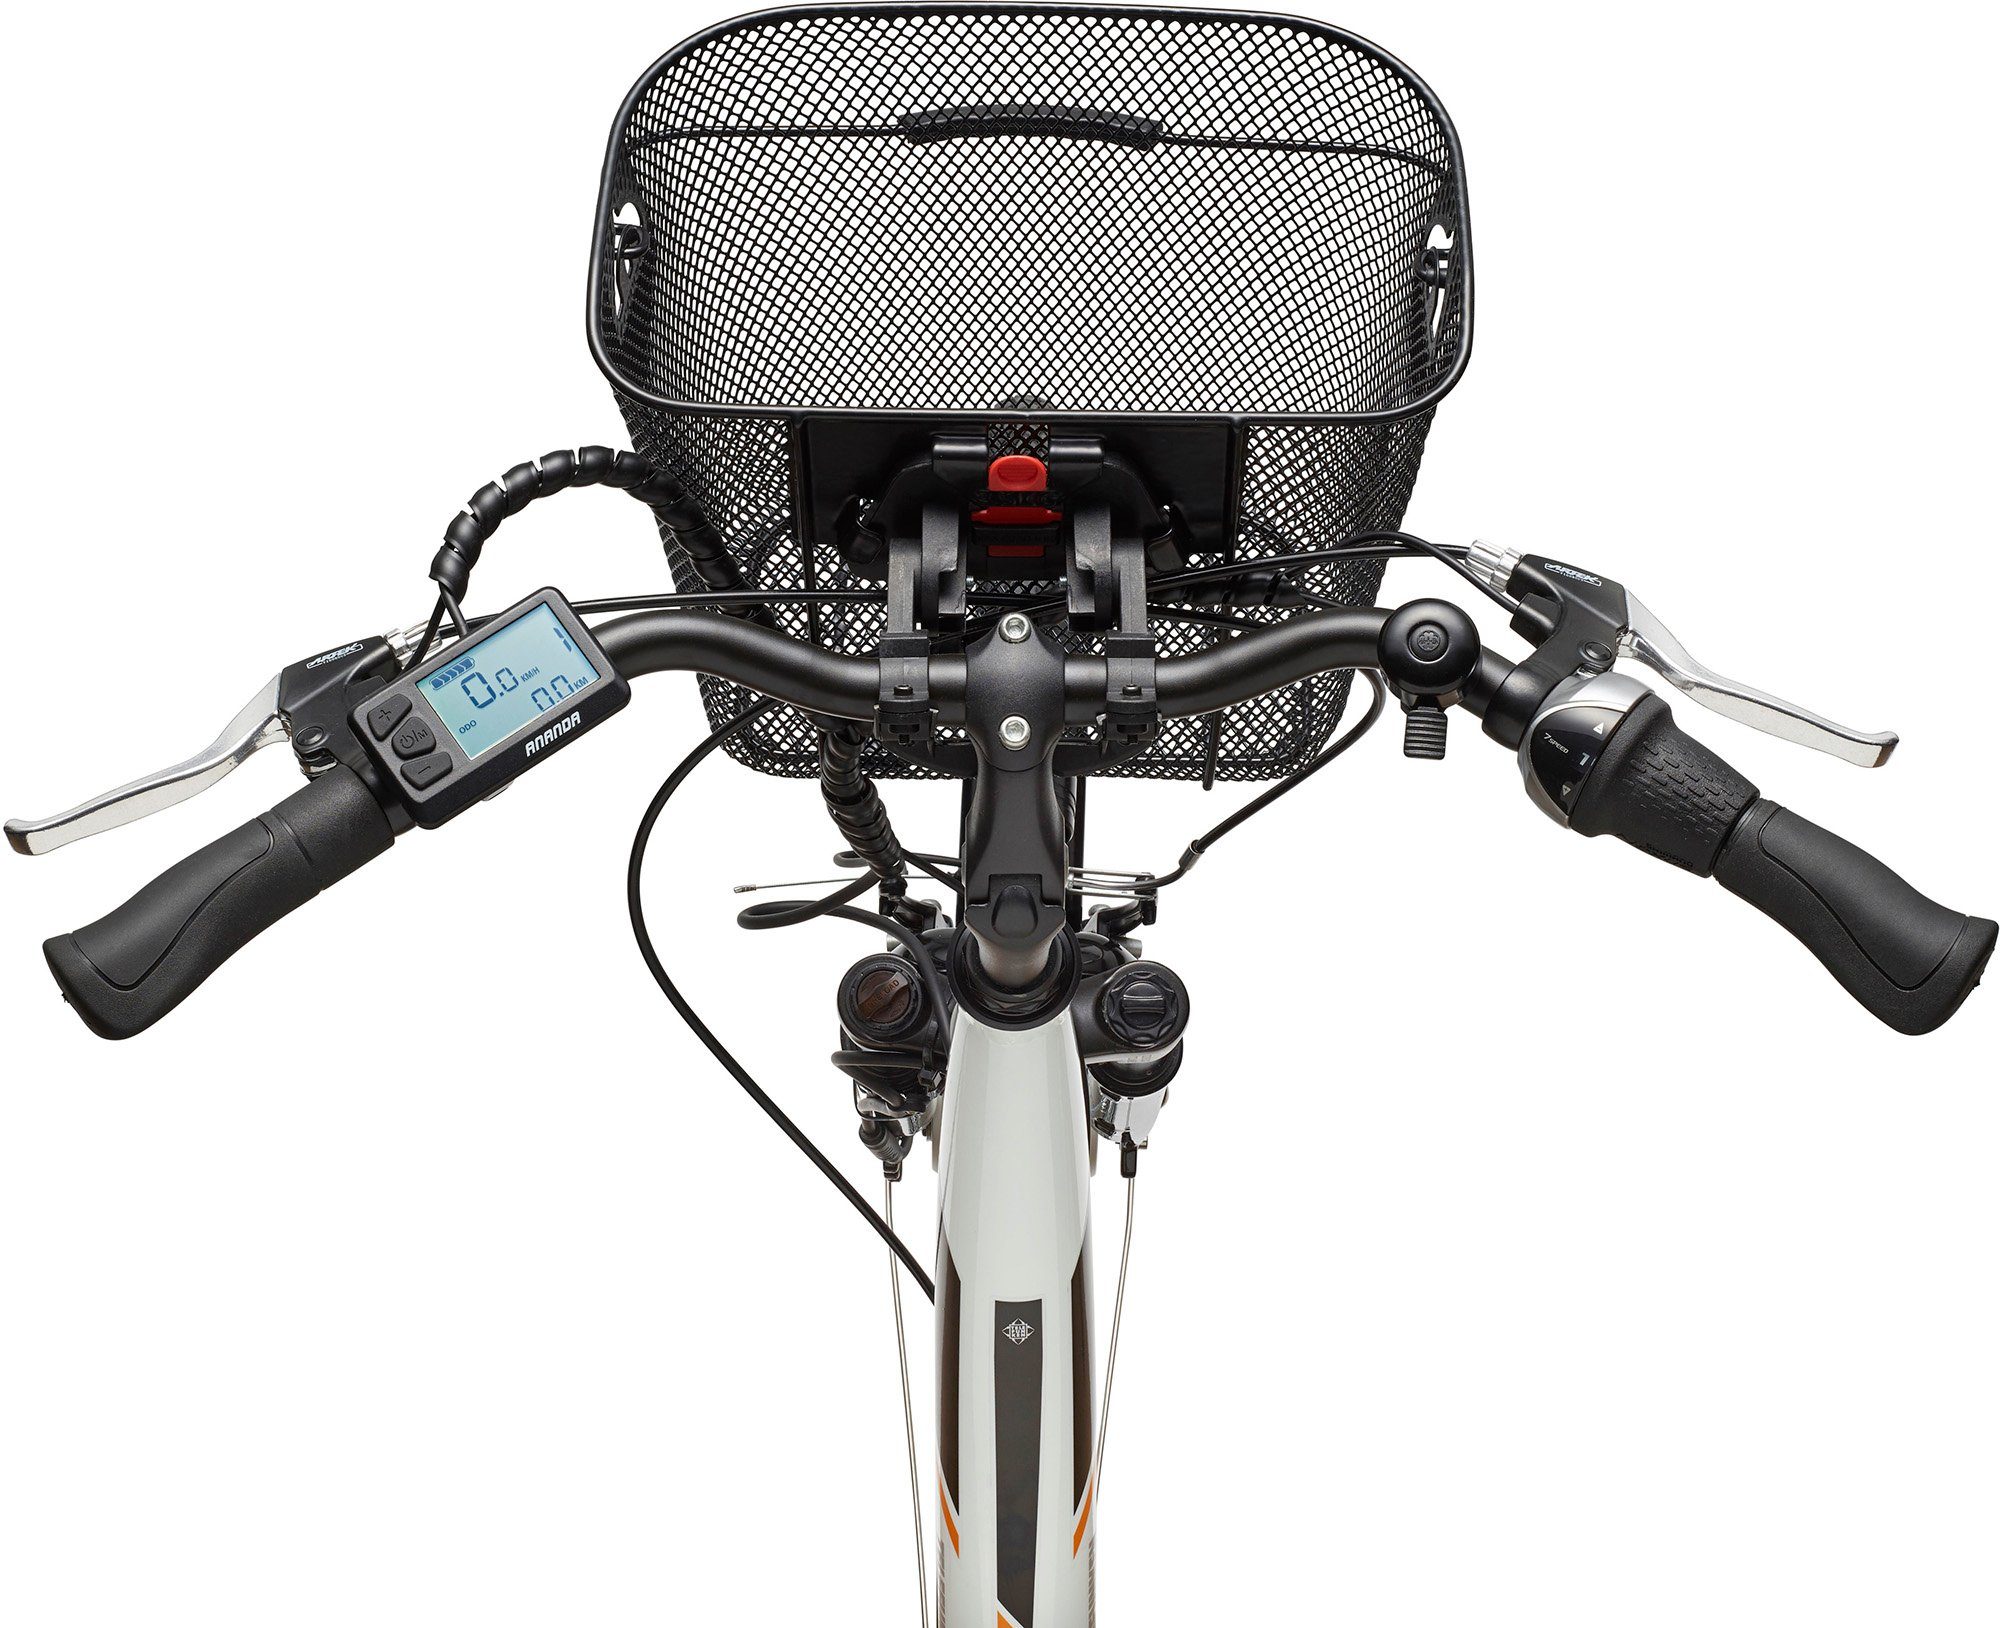 Telefunken E-Bike Multitalent RC840, 7 Wh Akku, Frontmotor, Fahrradkorb Shimano 374,4 Schaltwerk, mit Nexus Gang